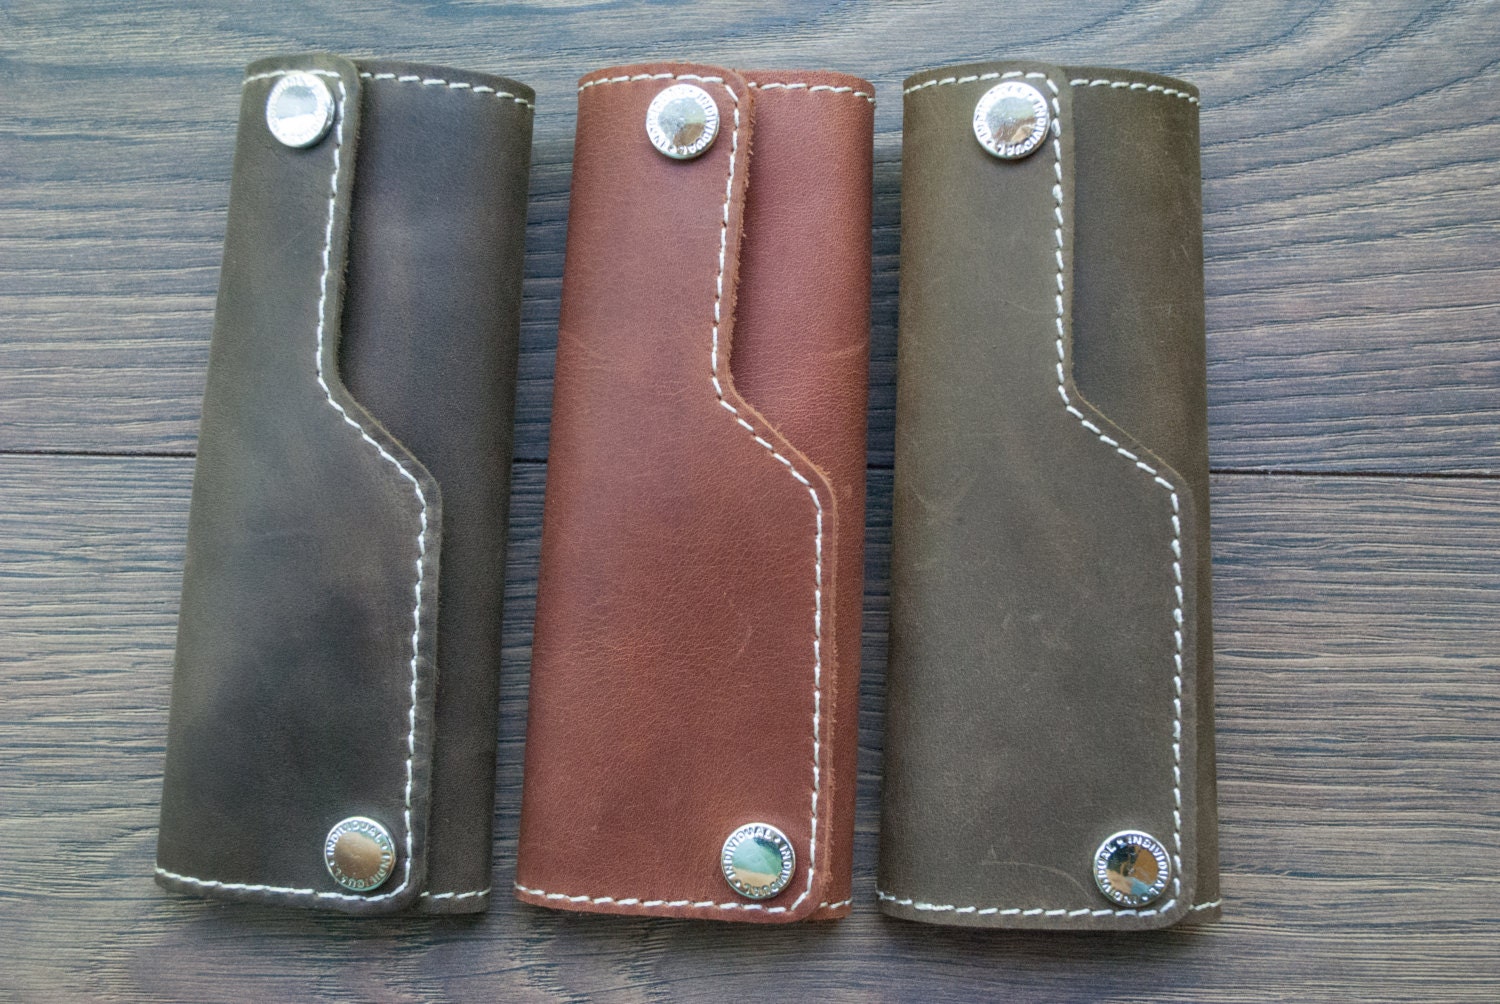 Italian Leather Key Holder - Leather Key Case, Leather Key Pouch, Leather Key, Gift for Men, Key Wallet - Handmade